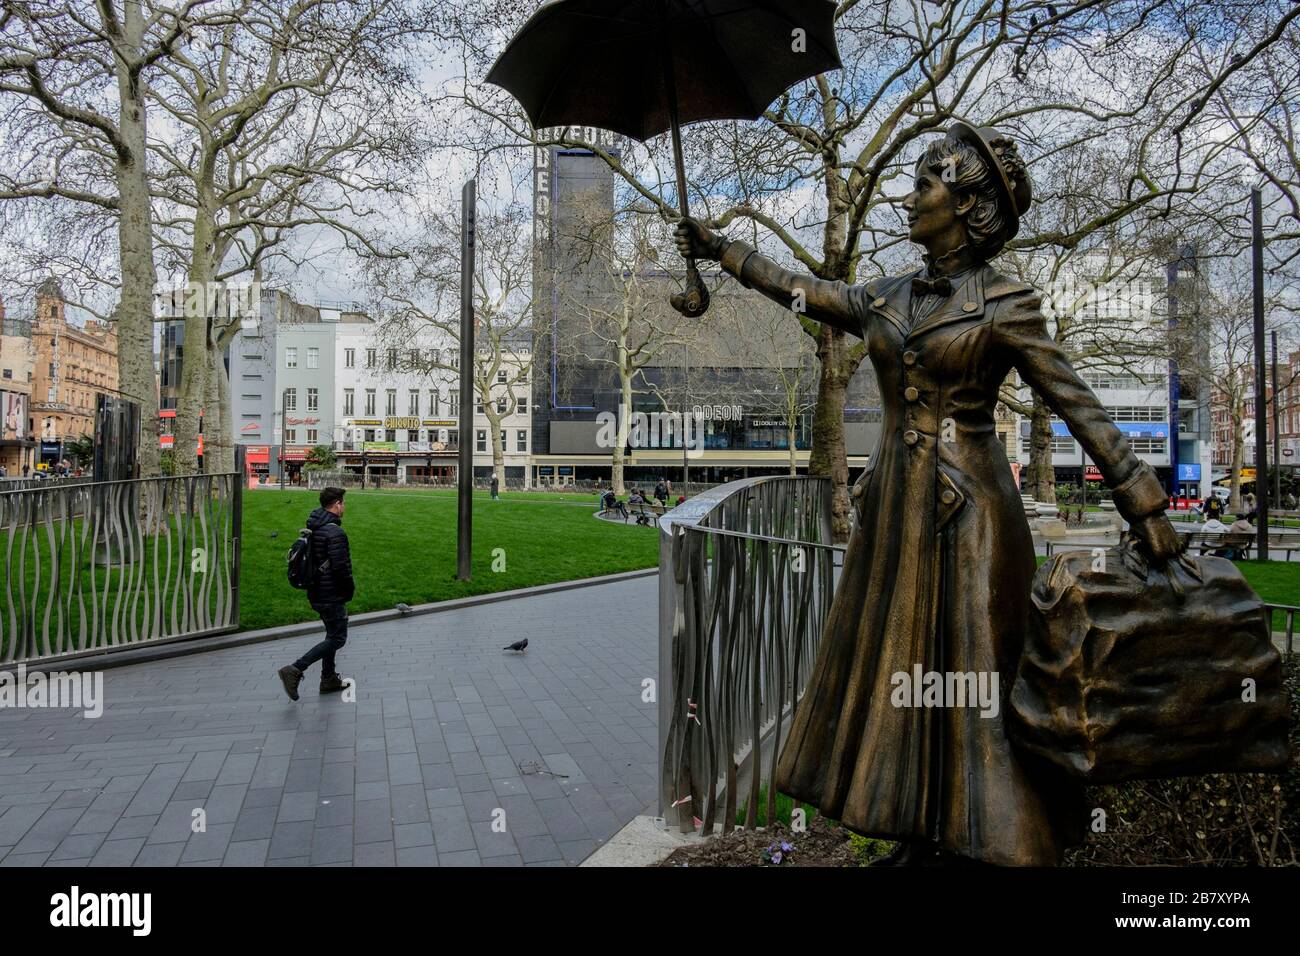 Londres, Reino Unido 18 de marzo de 2020. Una estatua de personaje de cine, Mary Poppins, se encuentra en una plaza de Leicester casi desierta, una zona normalmente ocupada con los visitantes de la capital. Foto de stock